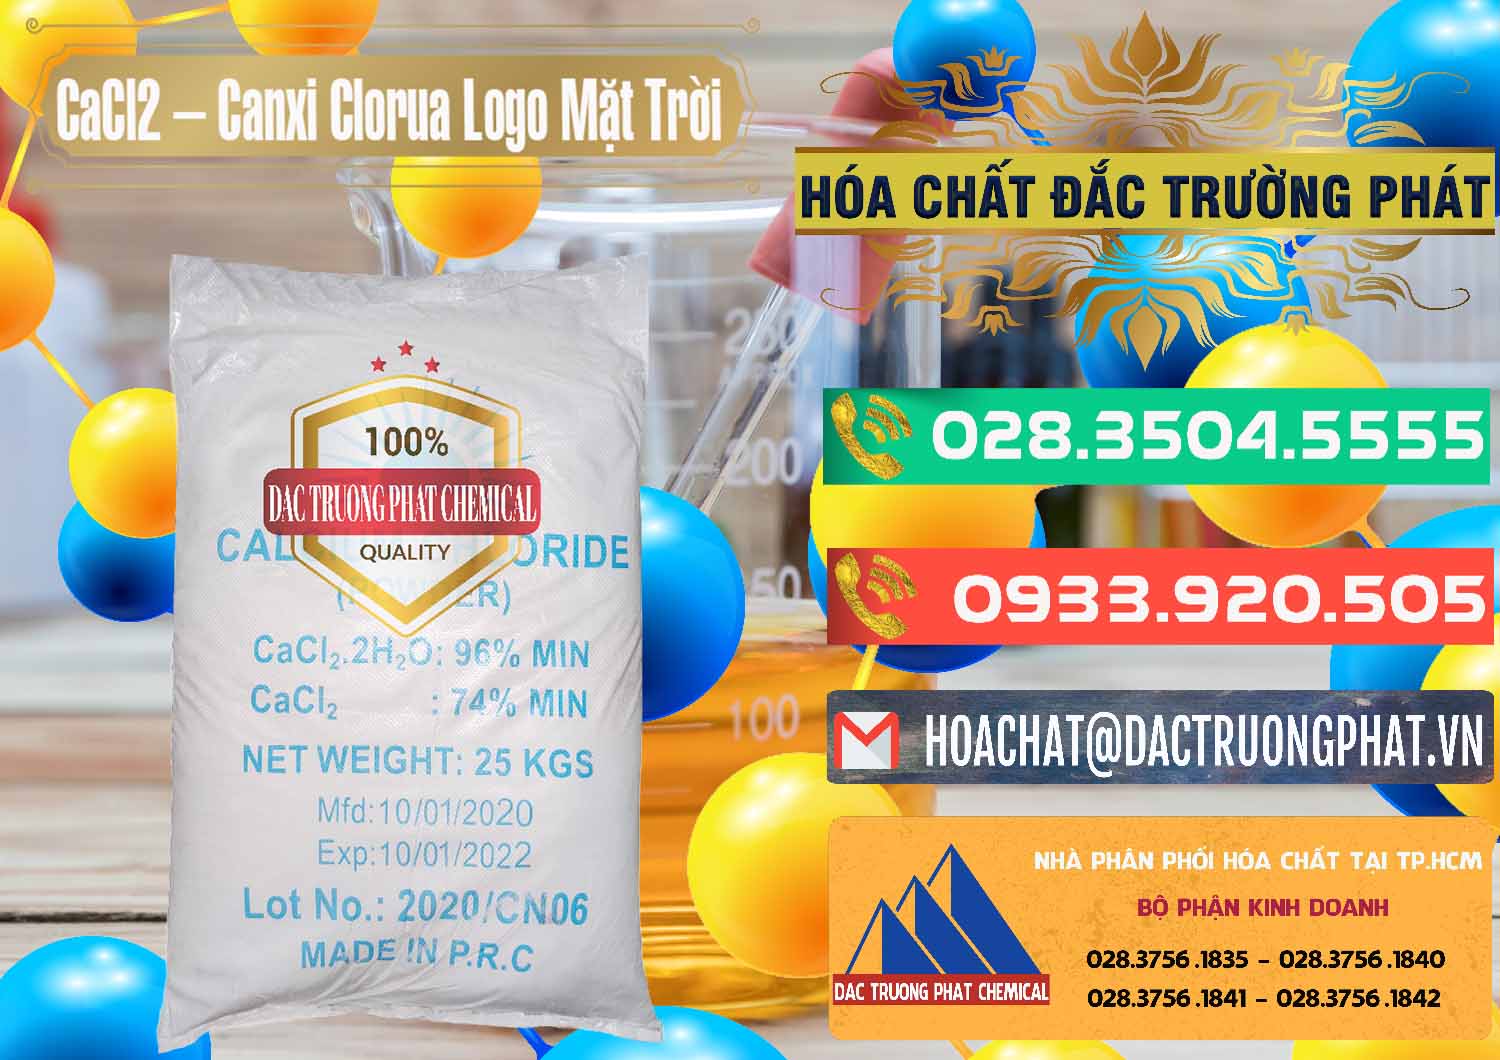 Nơi phân phối ( bán ) CaCl2 – Canxi Clorua 96% Logo Mặt Trời Trung Quốc China - 0041 - Chuyên phân phối và cung cấp hóa chất tại TP.HCM - congtyhoachat.com.vn